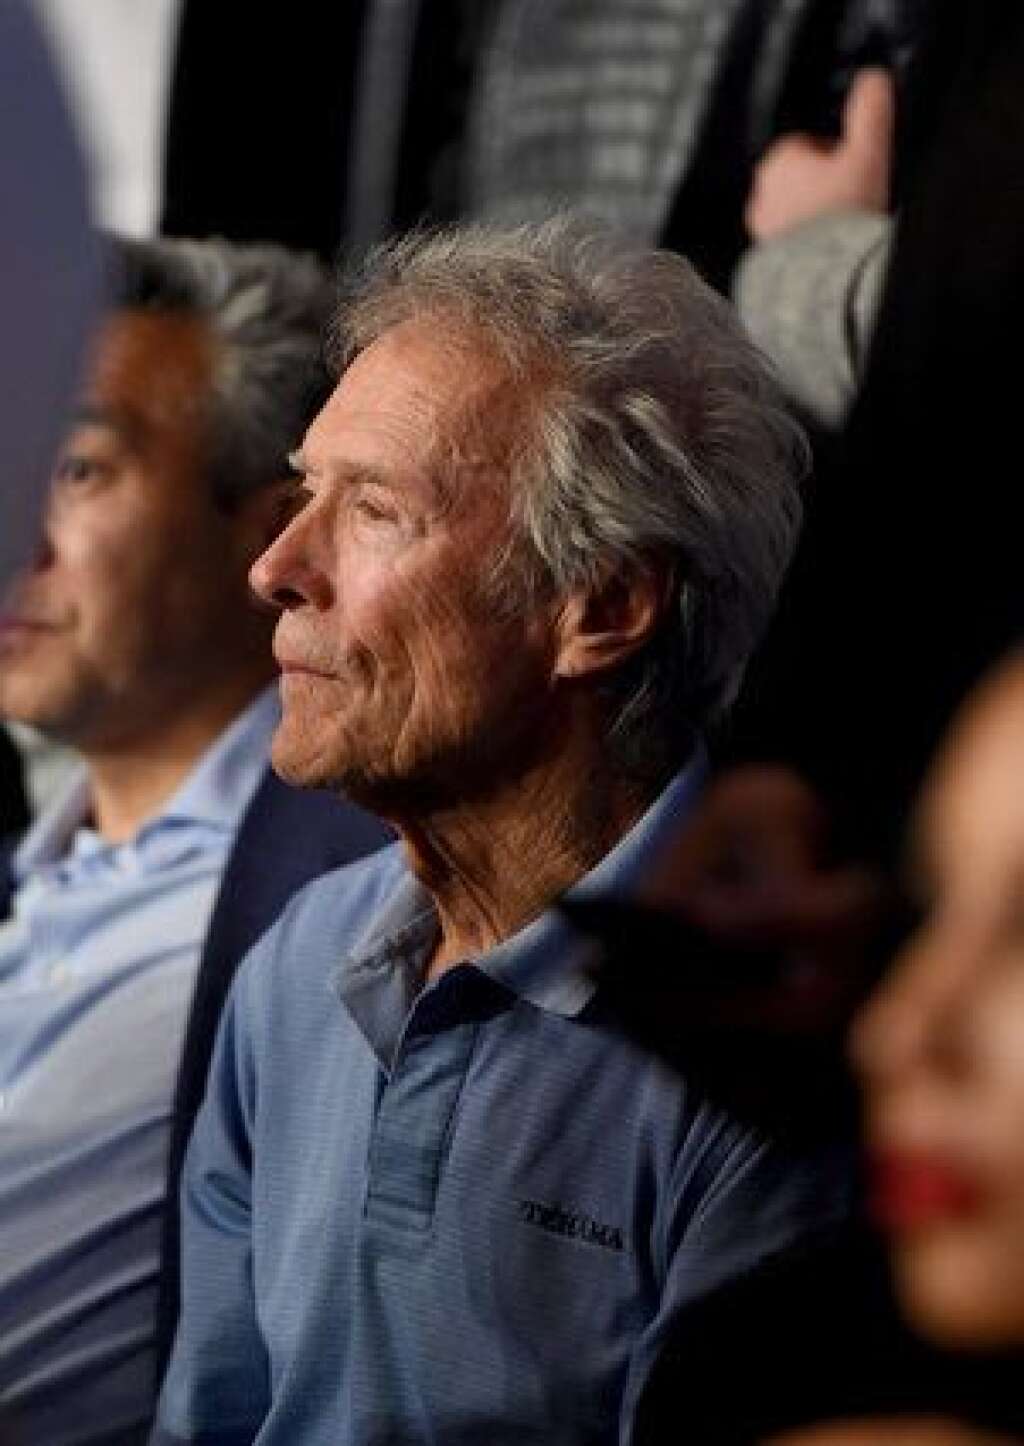 Clint Eastwood -